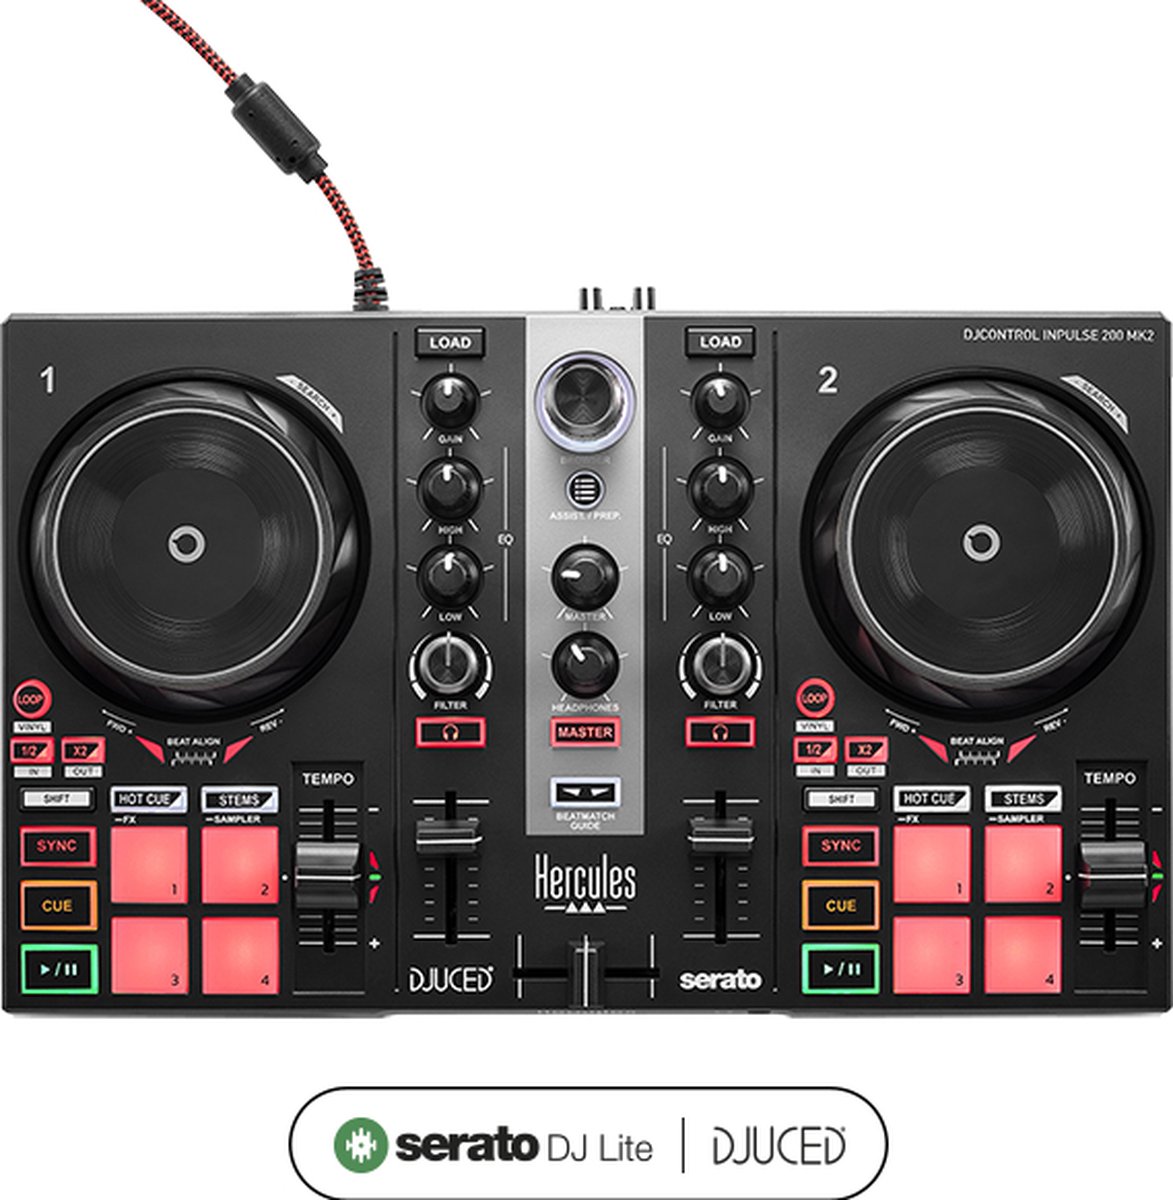 Hercules DJControl Inpulse 200 MK2 - DJ Controller - Mix met Serato DJ Lite en DJUCED - Met functies om te leren mixen en scratchen - Scheid tracks in stems om mashups te maken - 2 jogwielen, 2 x 4 pads met 4 modi (Hot Cue, Stems, FX, Sampler) - Hercules